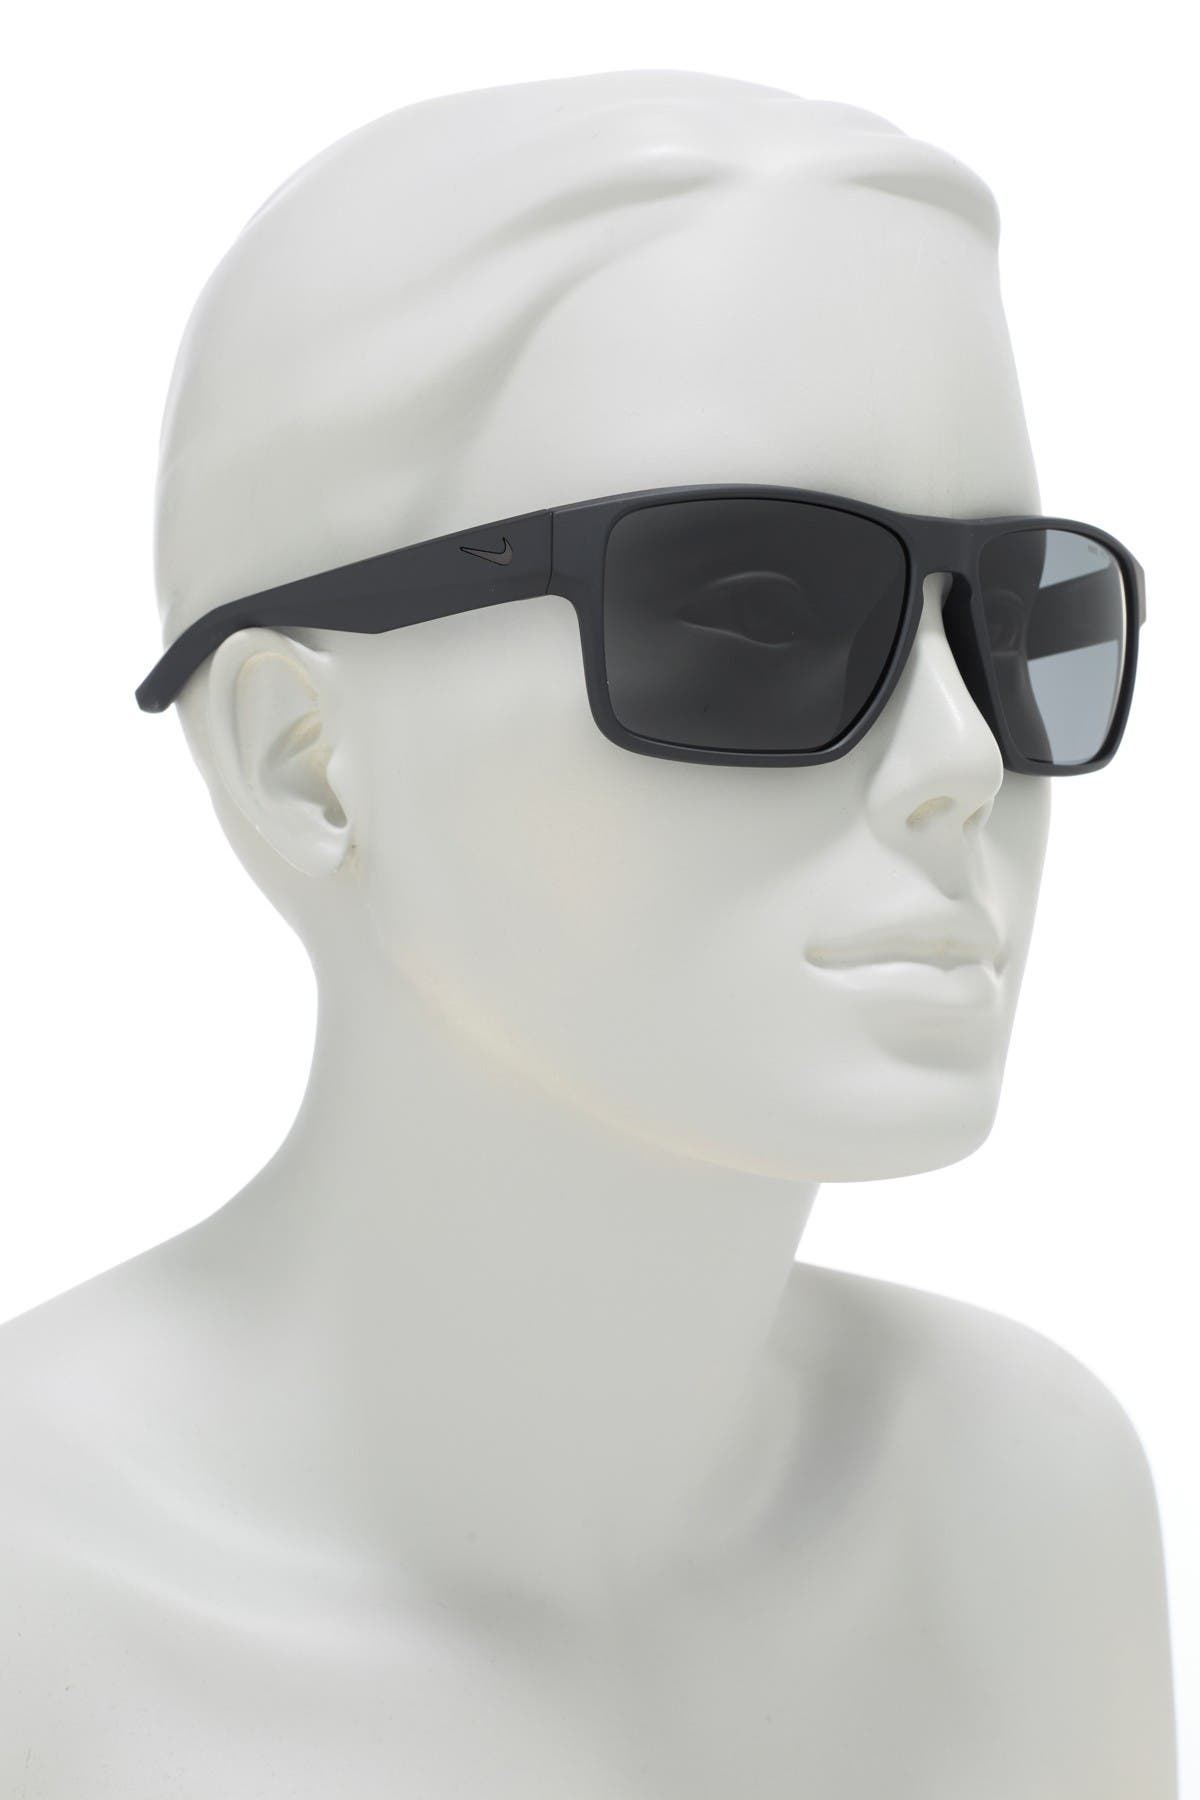 nike essential venture sunglasses